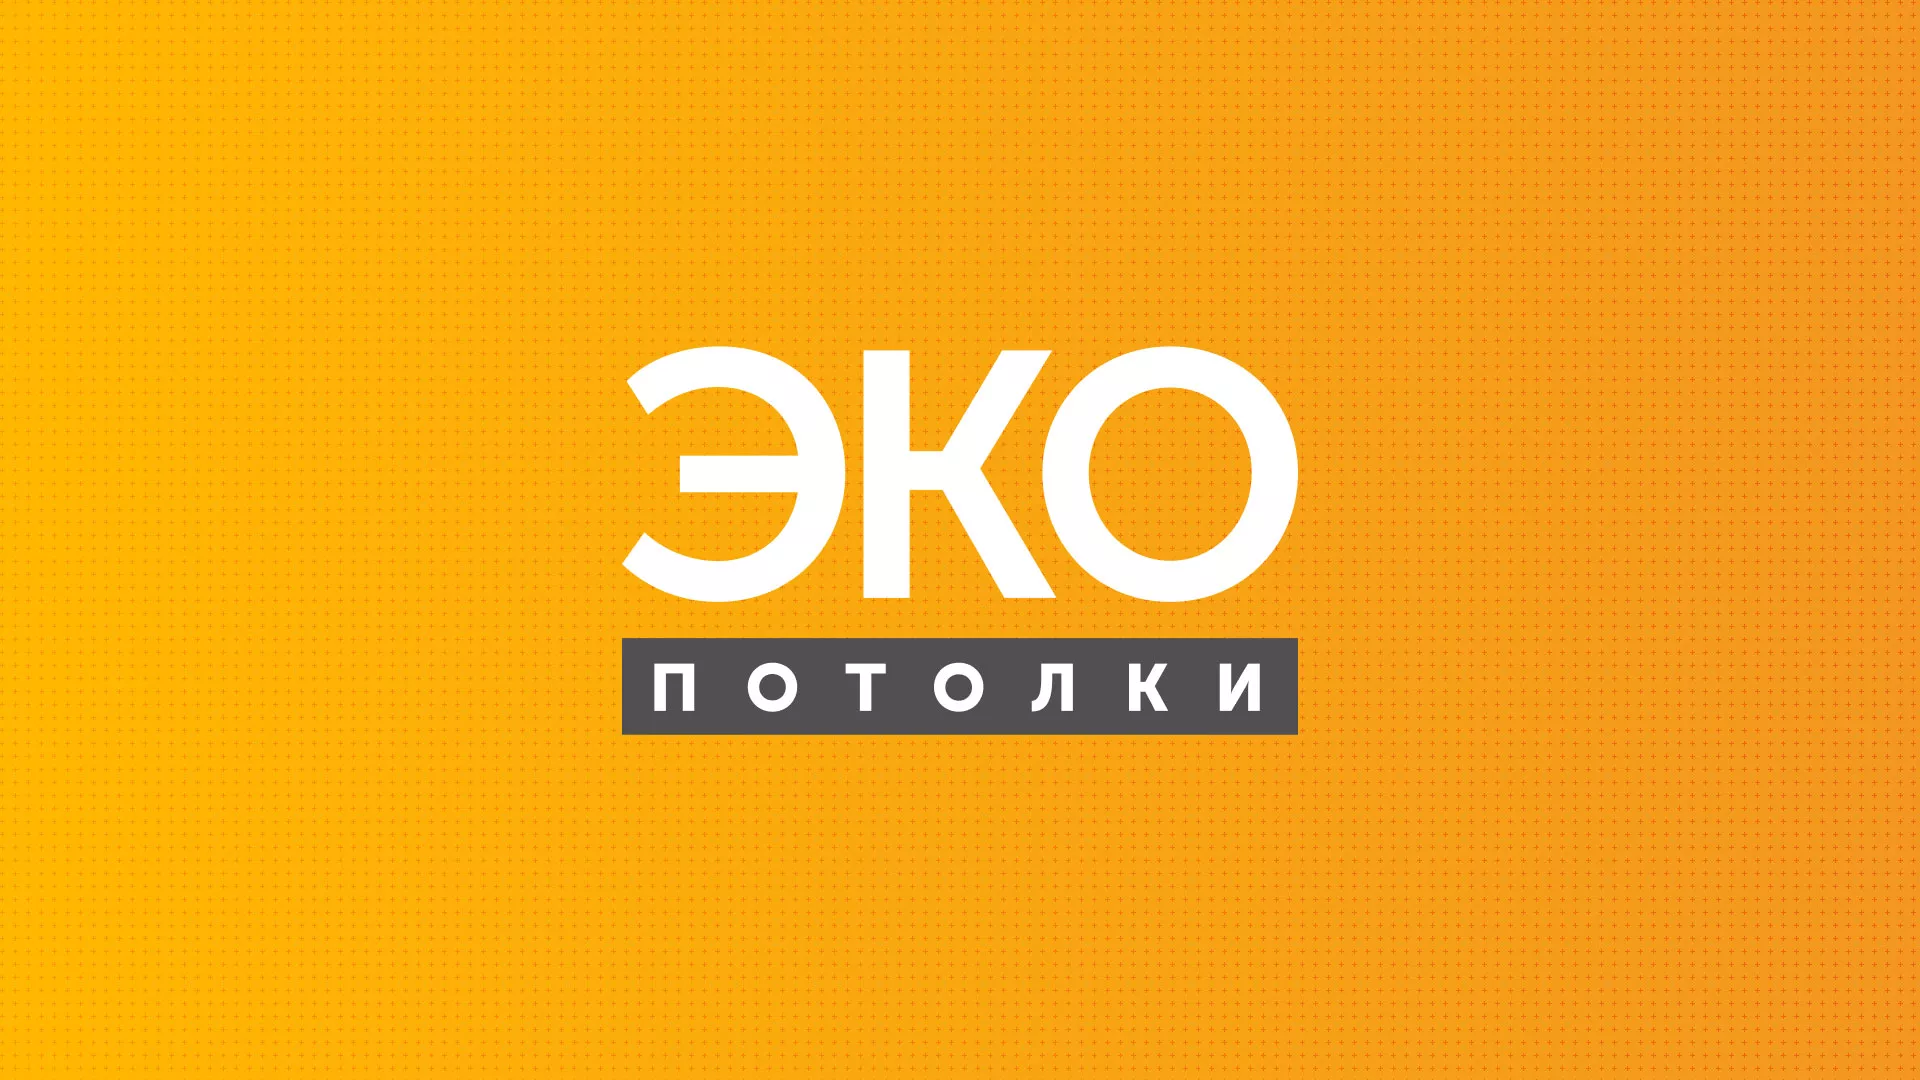 Разработка сайта по натяжным потолкам «Эко Потолки» в Моршанске